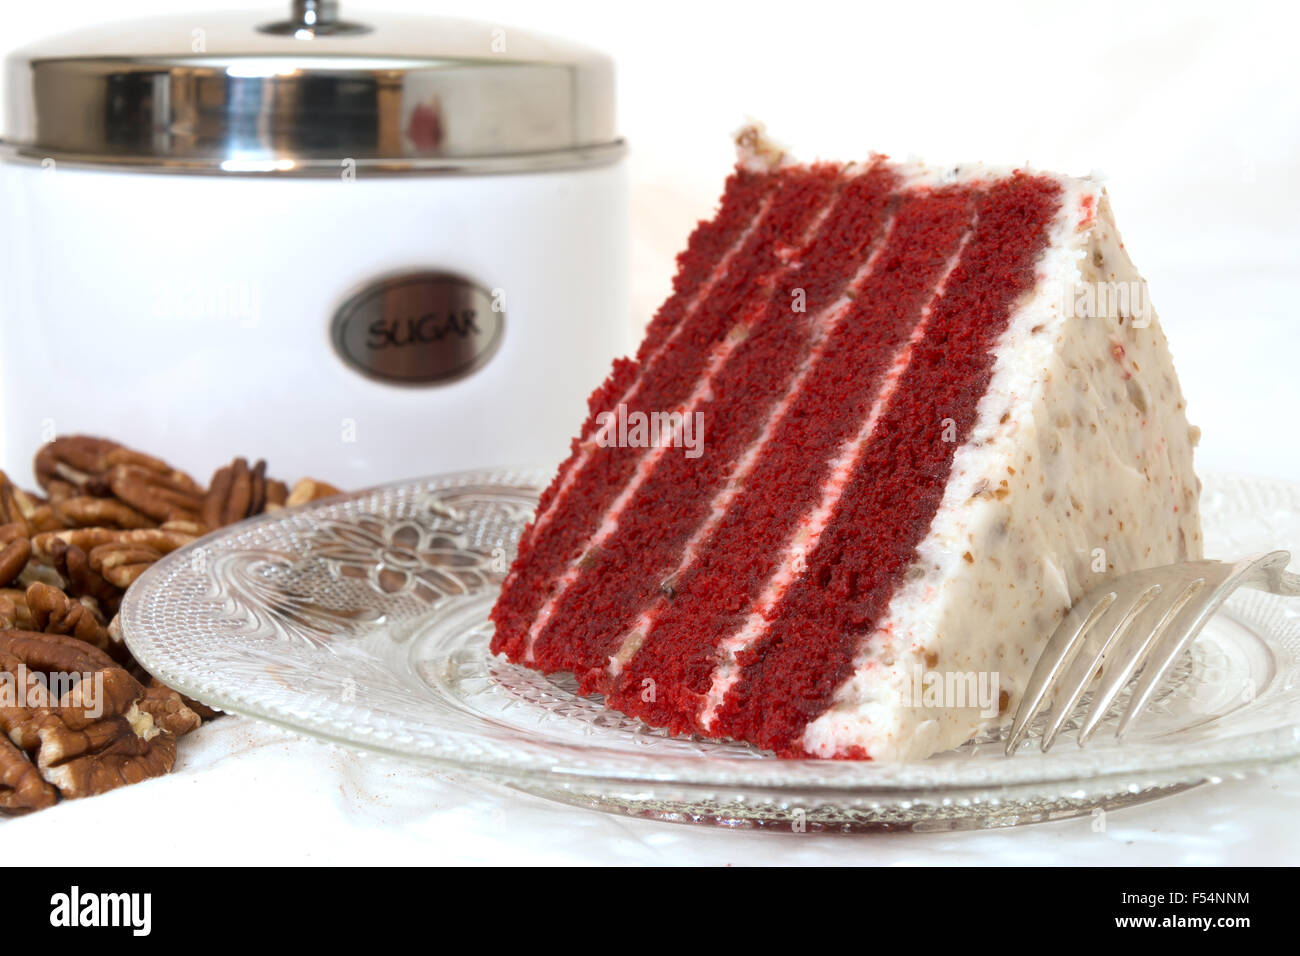 Fetta di torta rossa del velluto closeup con noci pecan tagliate a fette e zucchero barattolo in background. Isolato su sfondo bianco. Foto Stock